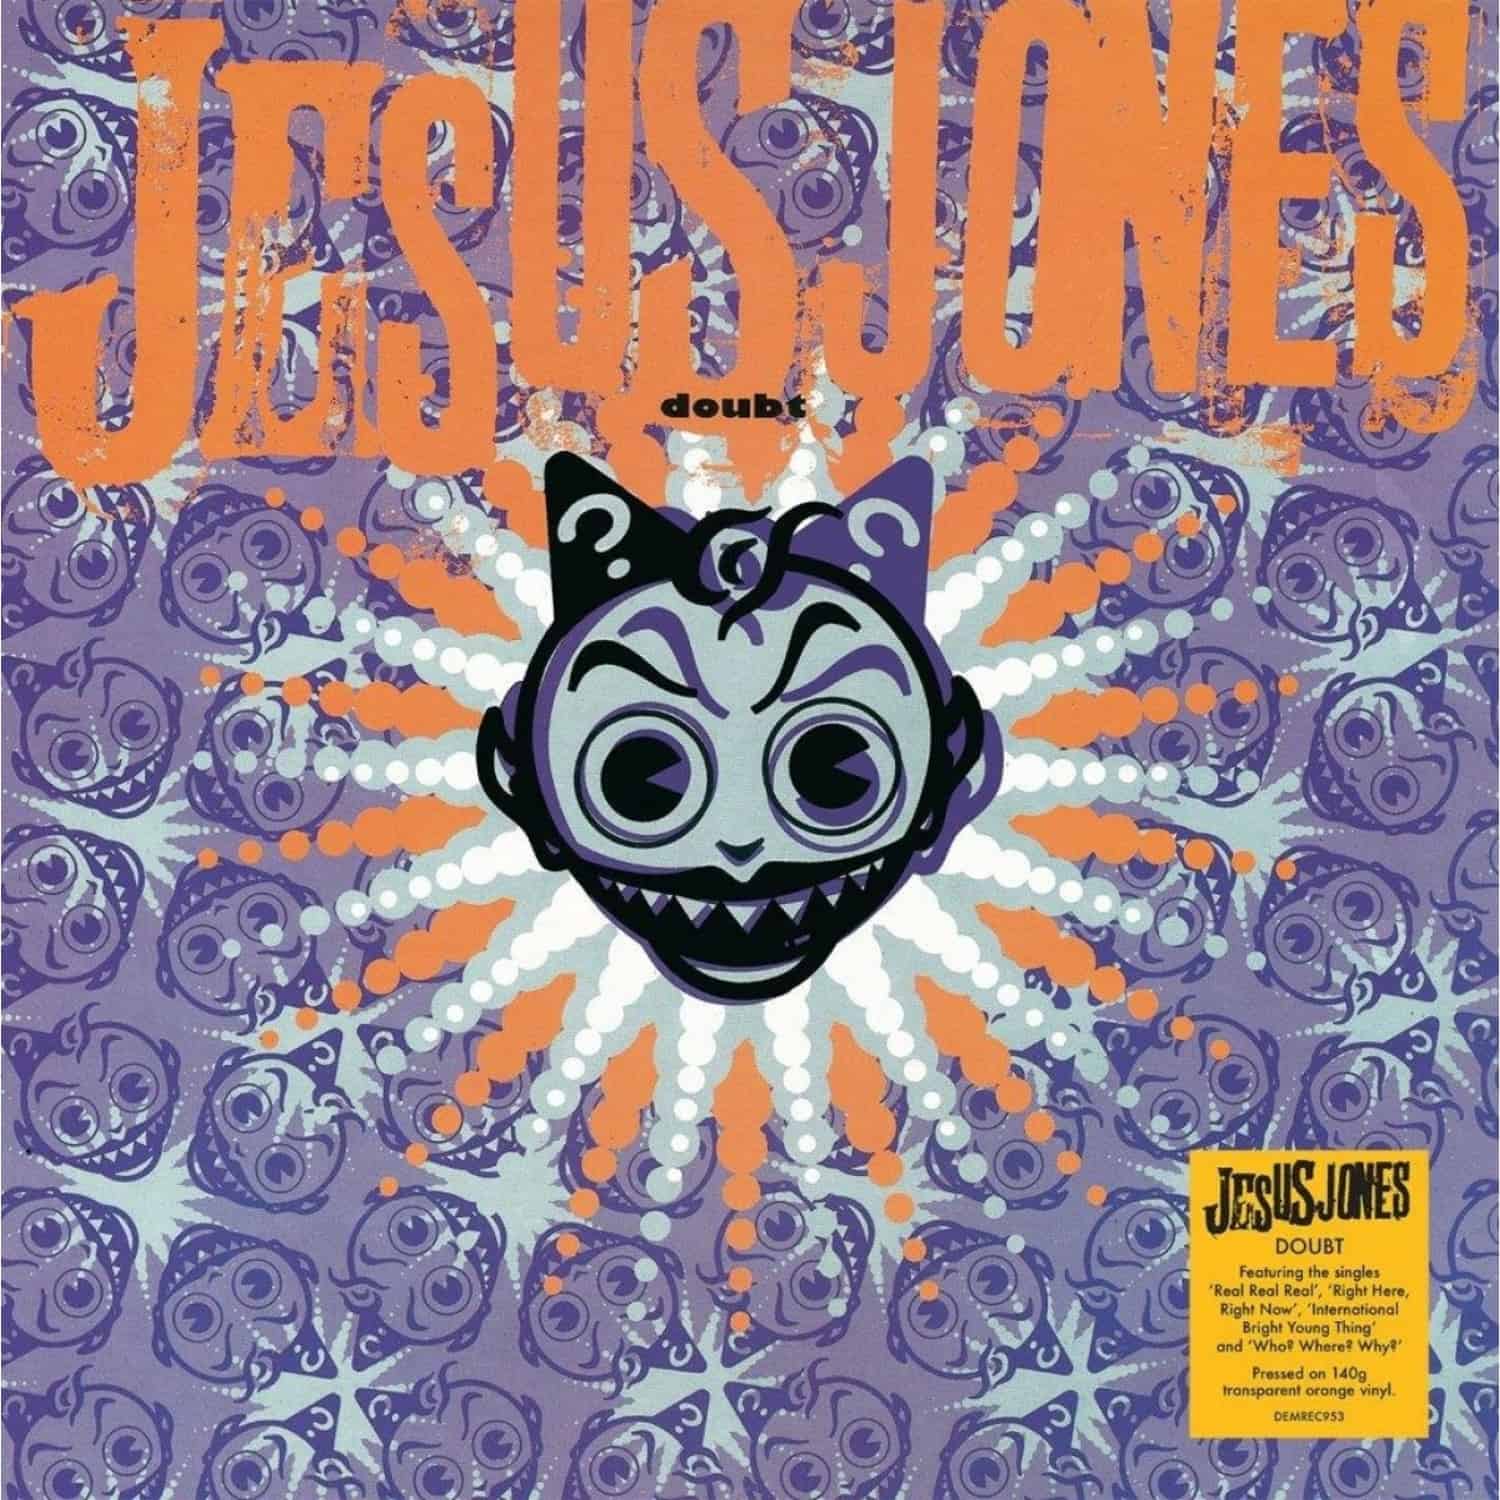 Jesus Jones - DOUBT 